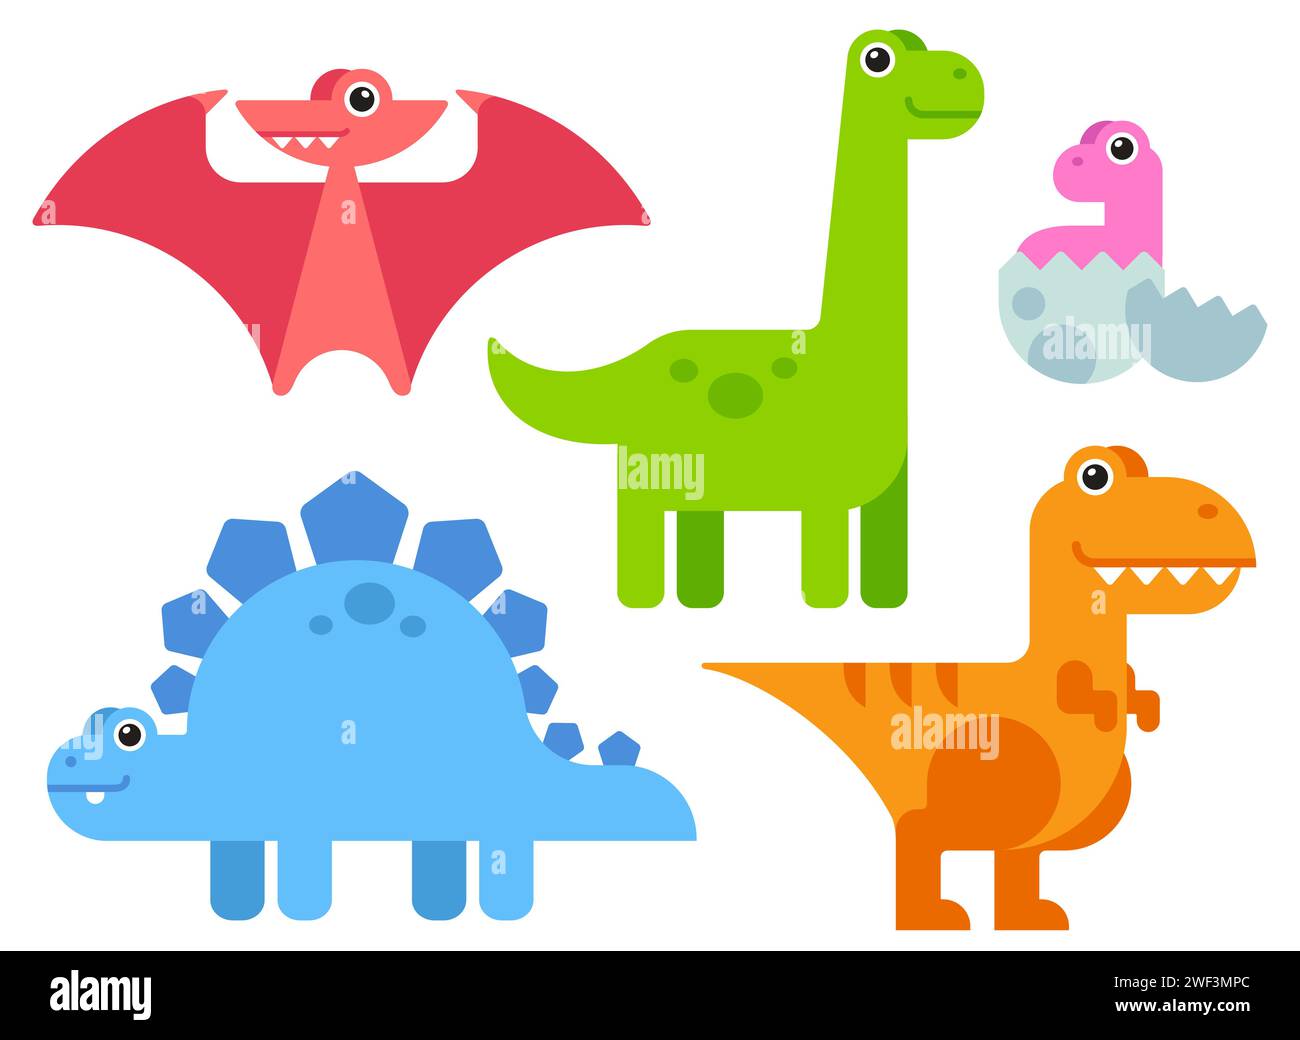 Adorabili dinosauri da cartoni animati in stile semplice e minimalista e colori brillanti. Illustrazione vettoriale. Illustrazione Vettoriale